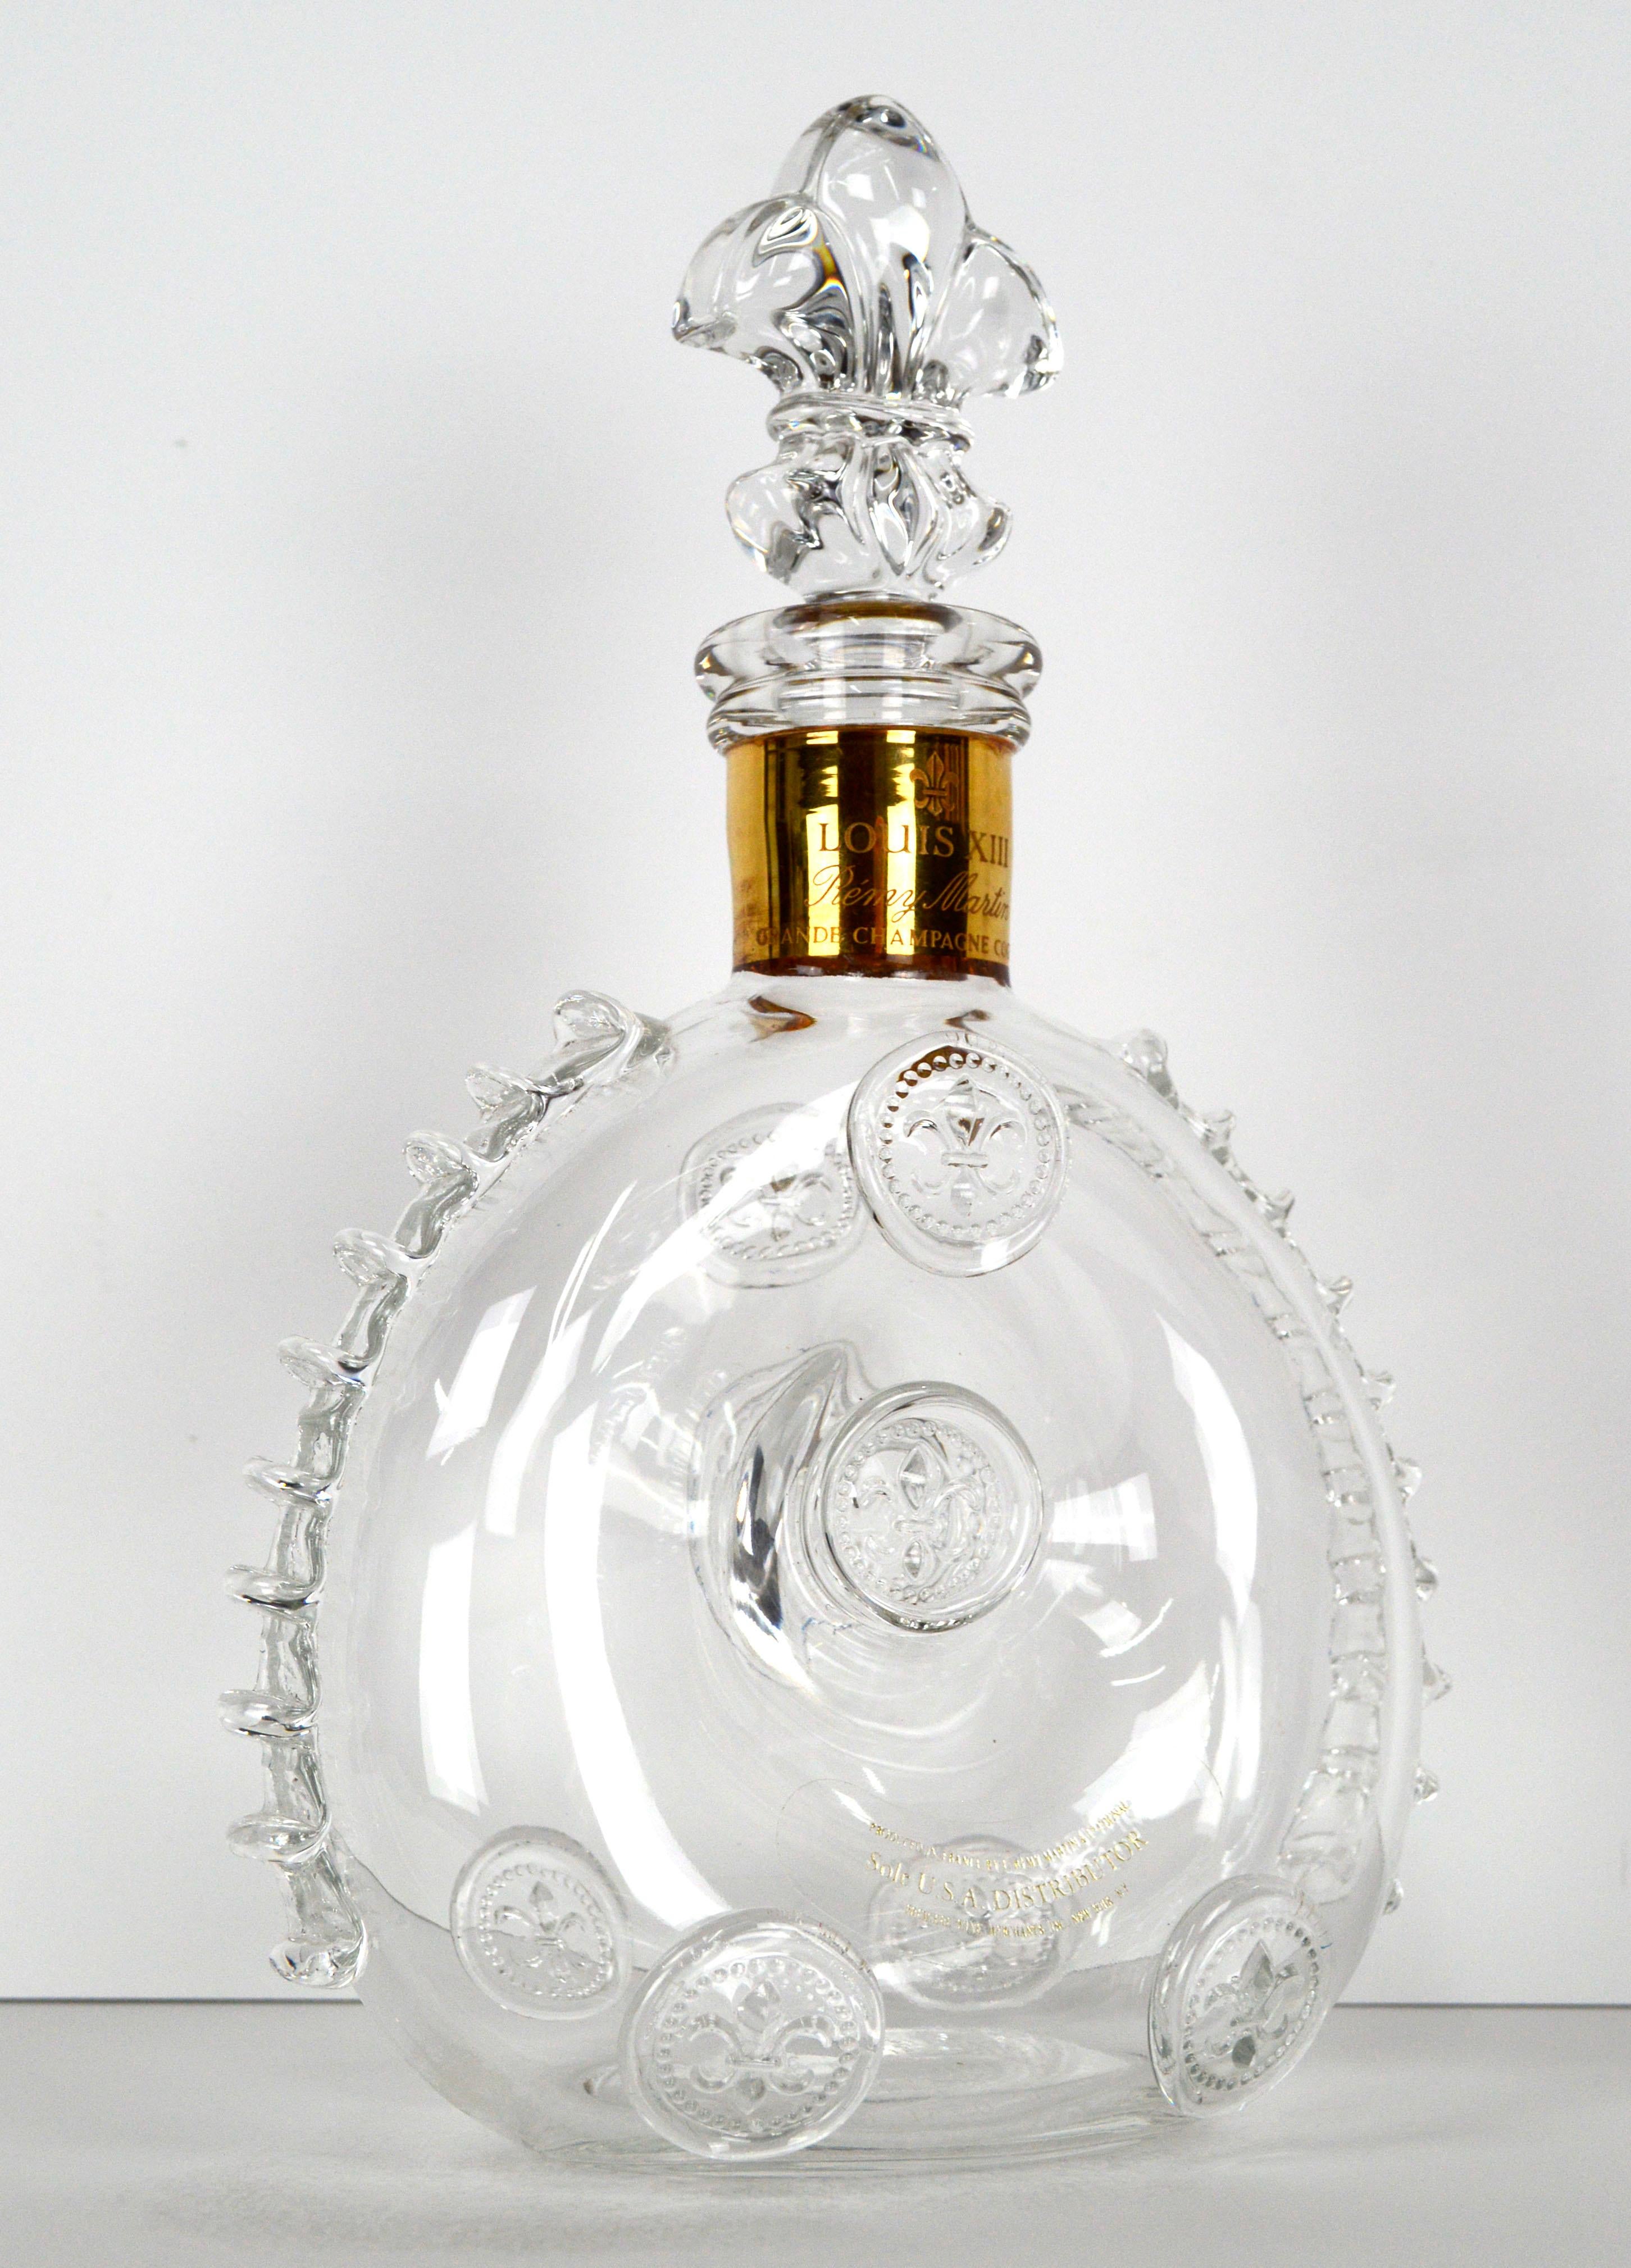 Magnifique carafe à cognac Remy Martin Louis XIII en cristal Baccarat avec bouchon, par le fabricant de cristal fin Baccarat (français, fondé en 1764). La marque Remy Martin Baccarat Crystal est gravée sur la base, avec le numéro x5432. Le bouchon